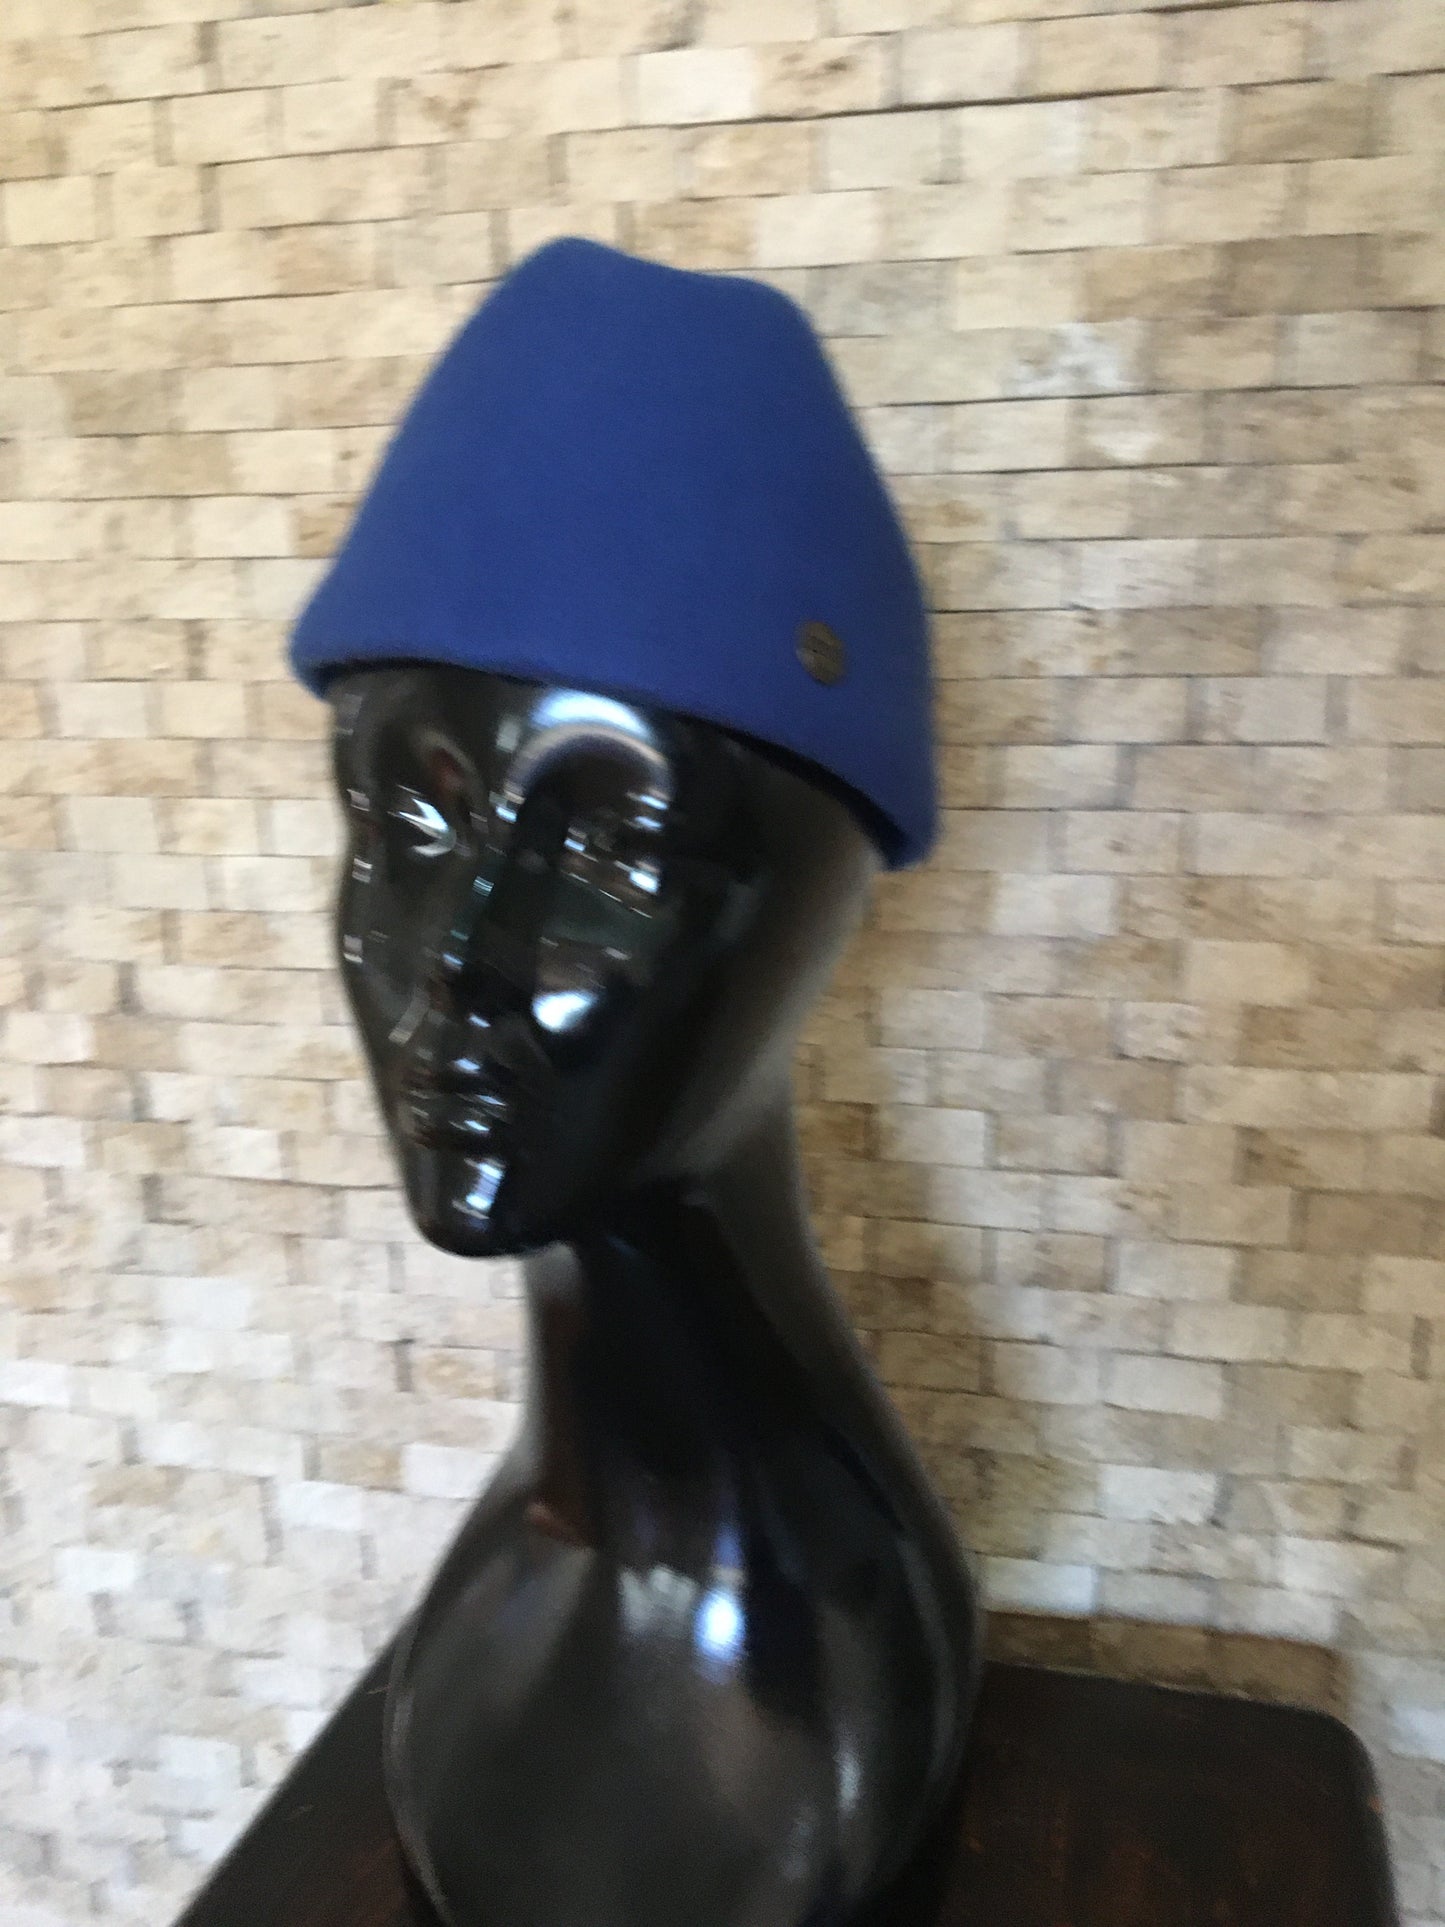 Blue Fez Hat